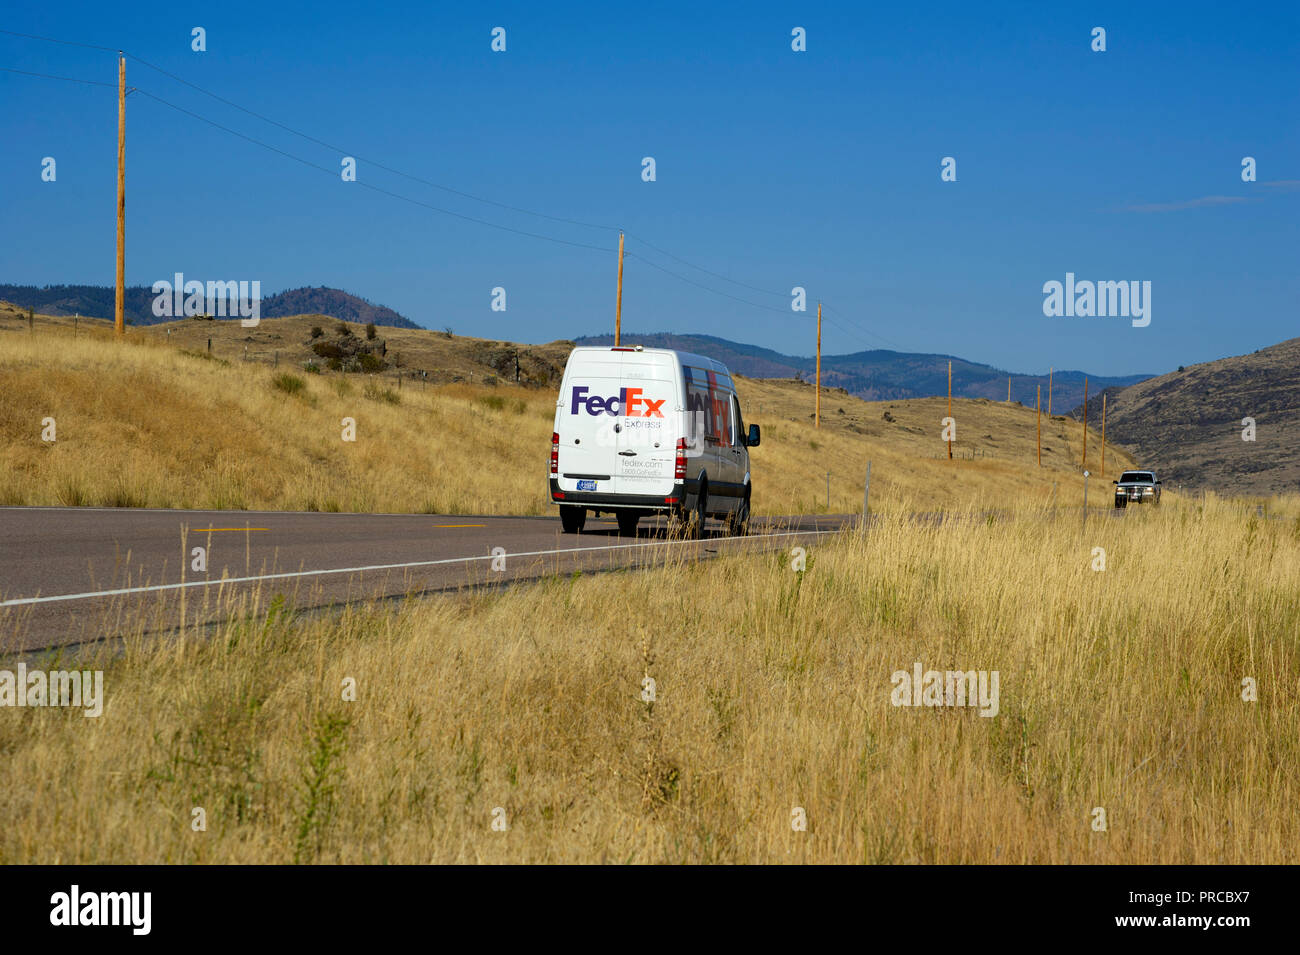 Entrega de FedEx carretilla en remoto camino en Montana, EE.UU. Foto de stock